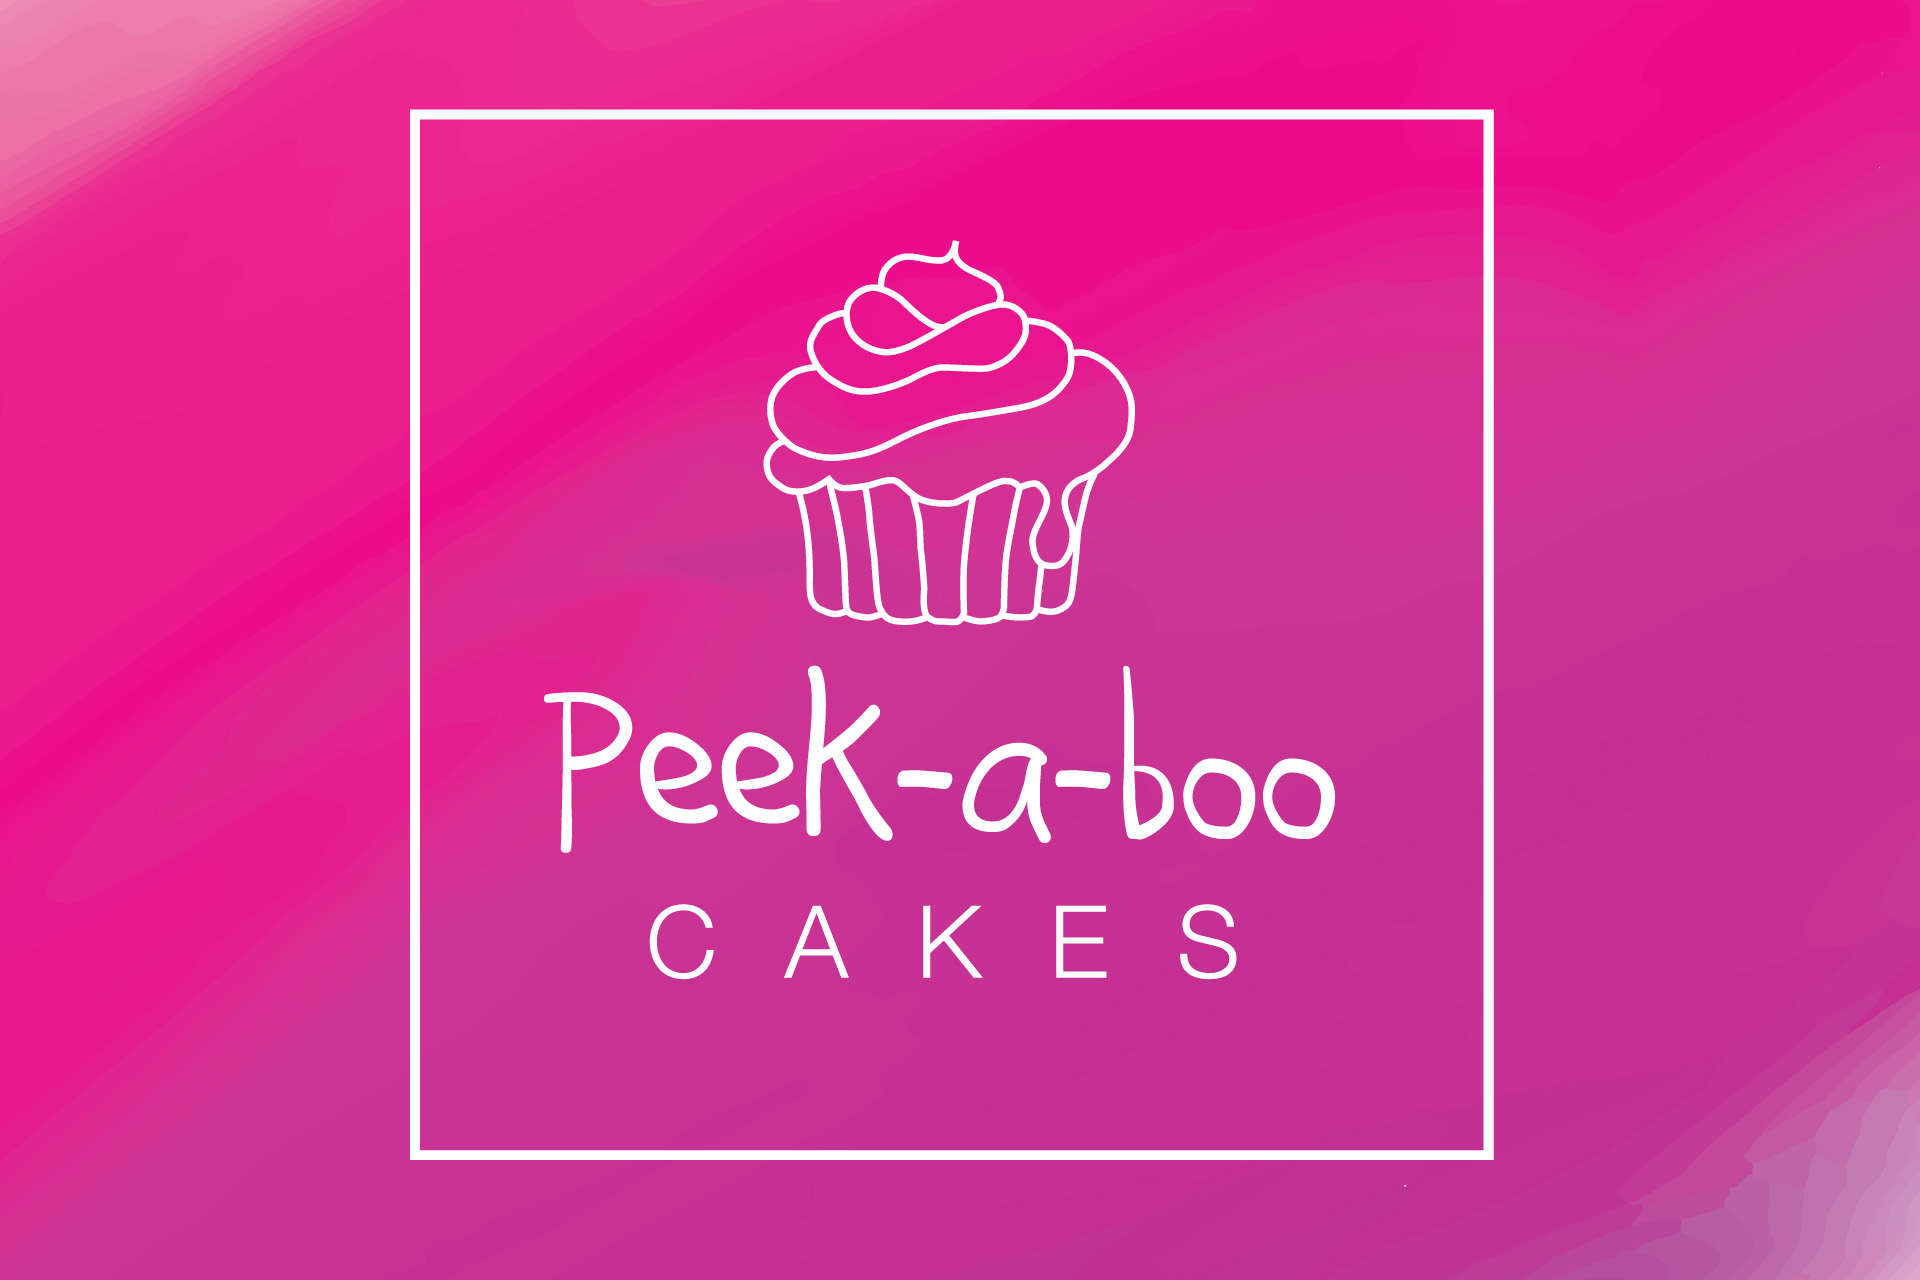 Peek-a-boo cakes logo design